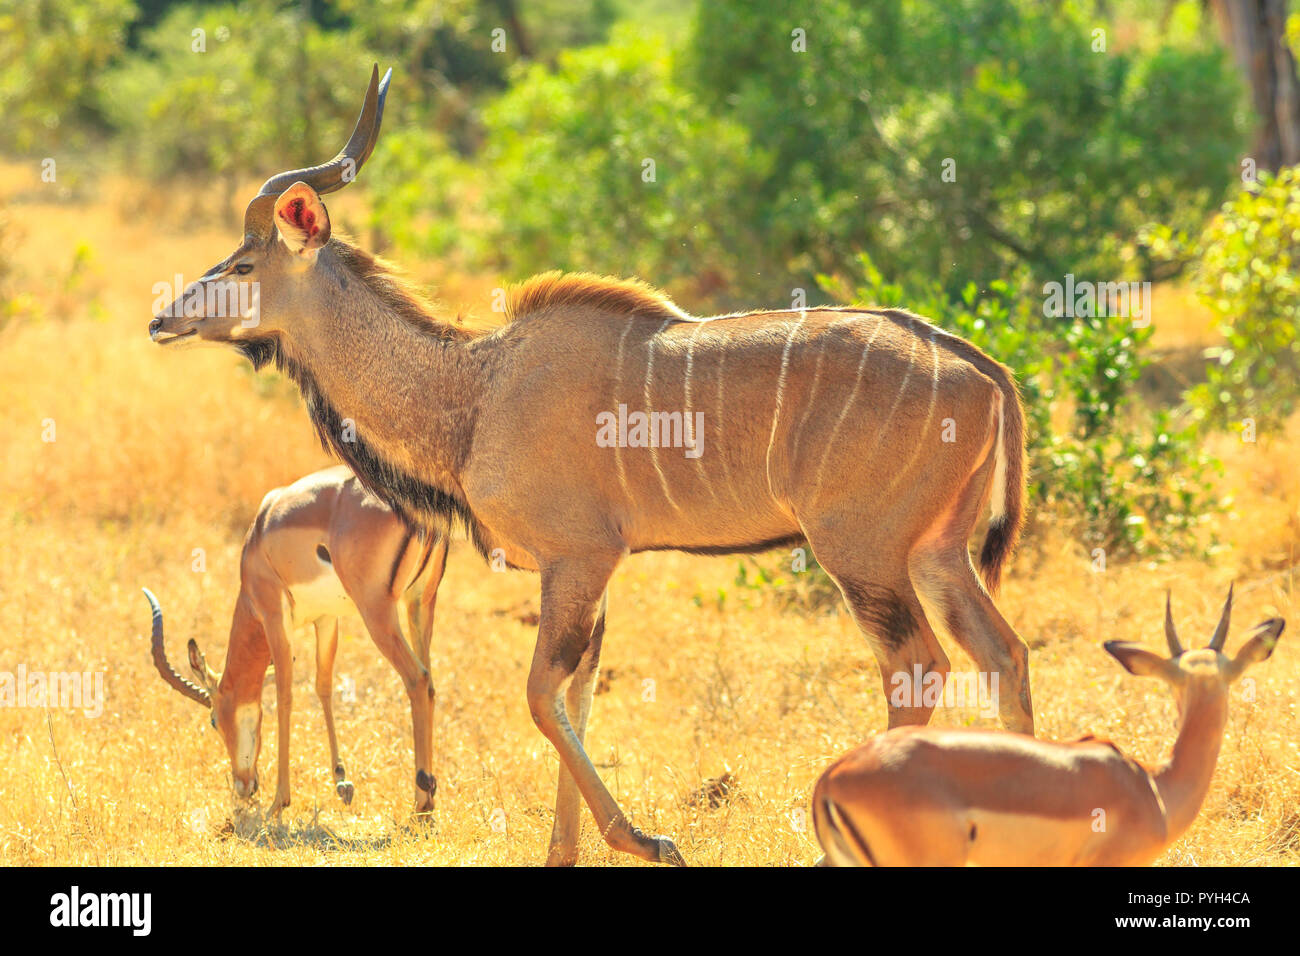 Seitenansicht des Kudus Familie mit Baby, eine Antilopenarten, in Buschland stehend, Krüger Nationalpark, Südafrika. Game Drive Safari. Abendlicht. Tragelaphus Strepsiceros Arten. Stockfoto